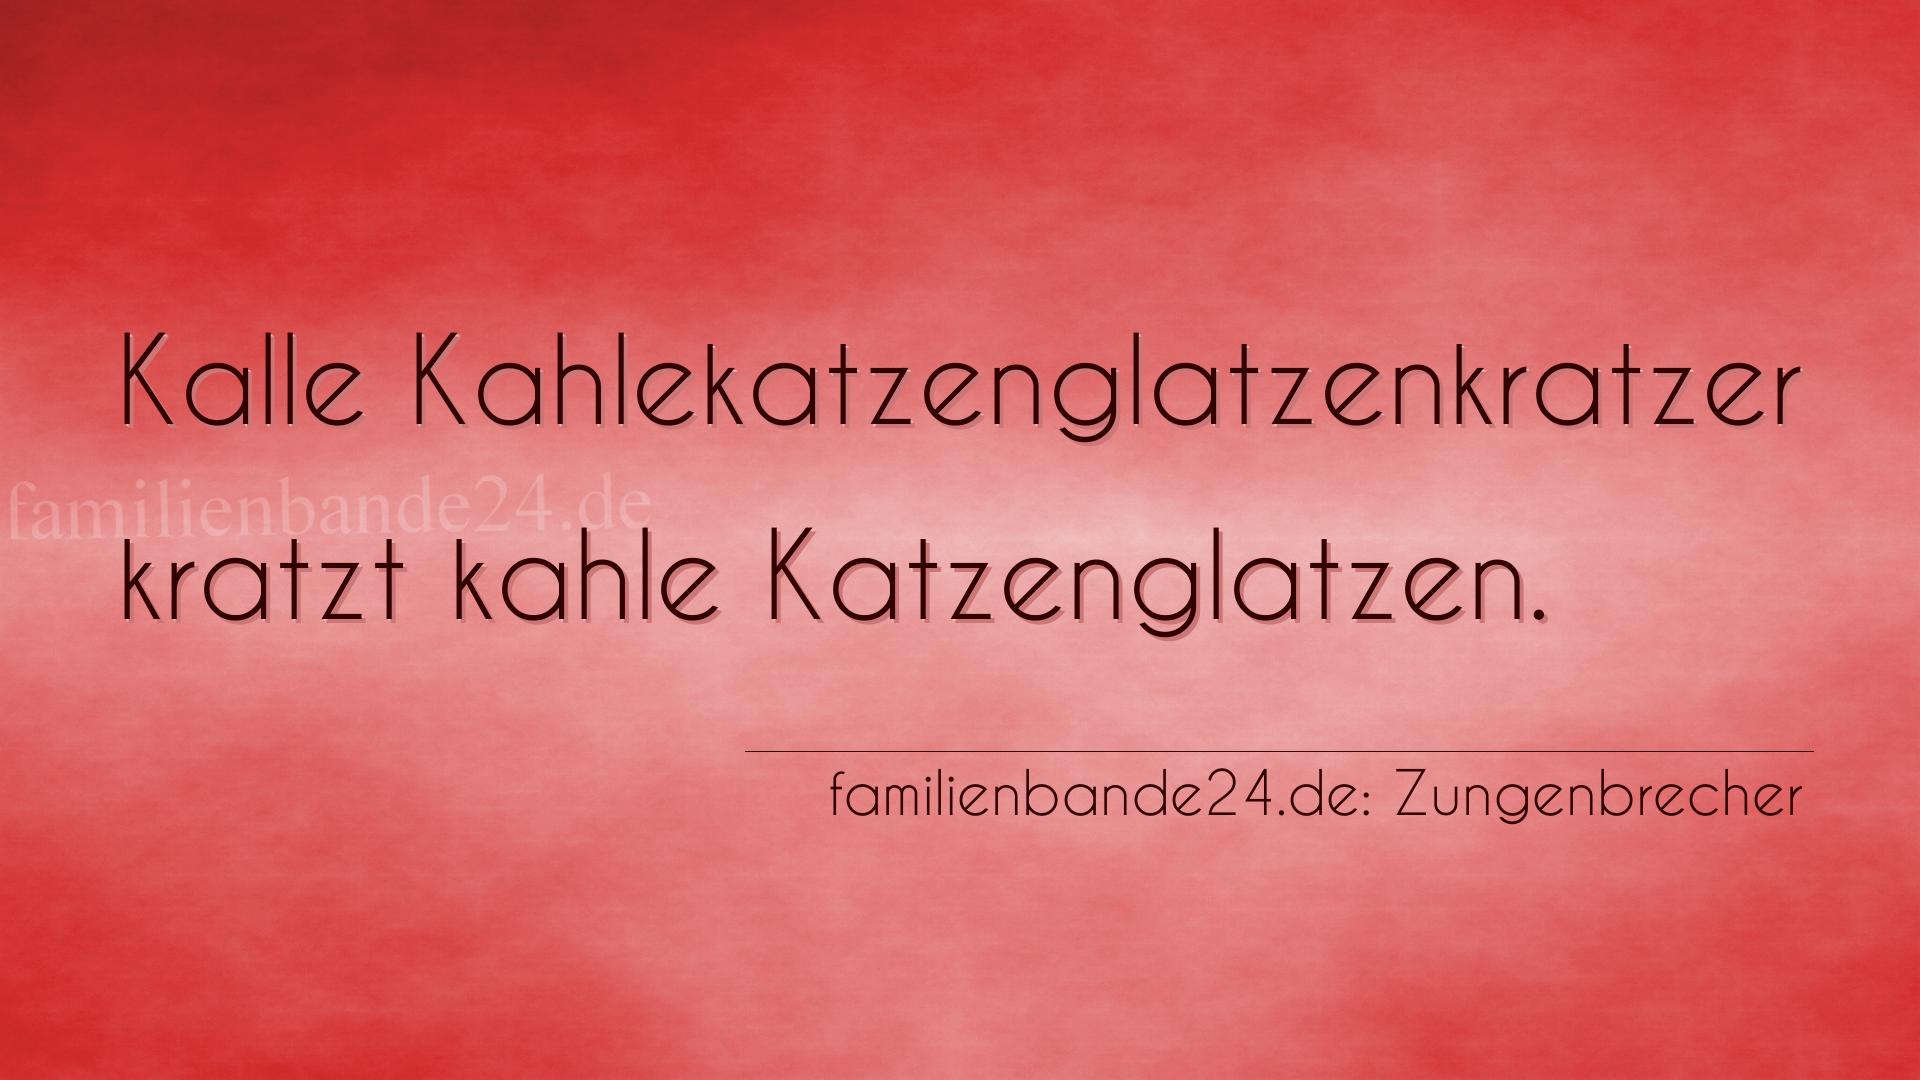 Zungenbrecher Nr. 697: Kalle Kahlekatzenglatzenkratzer kratzt kahle Katzenglatzen.